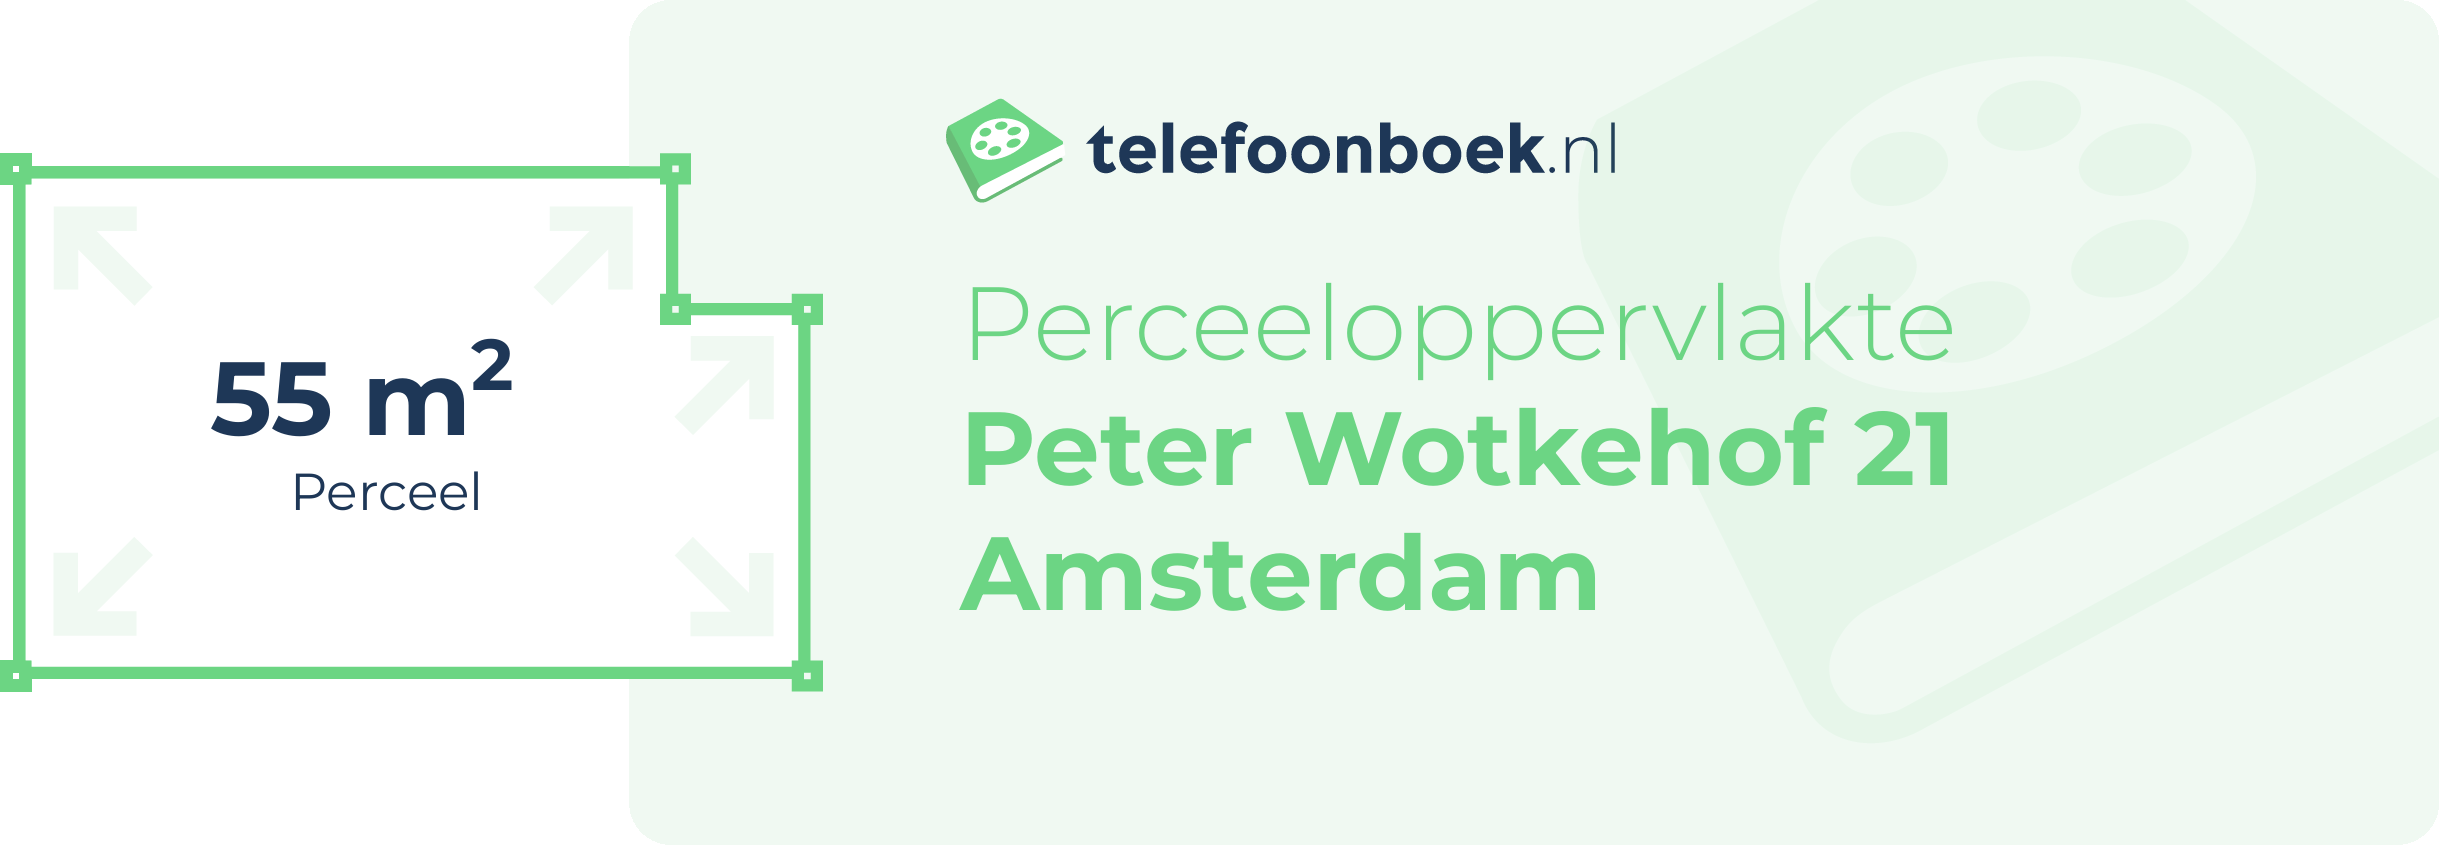 Perceeloppervlakte Peter Wotkehof 21 Amsterdam